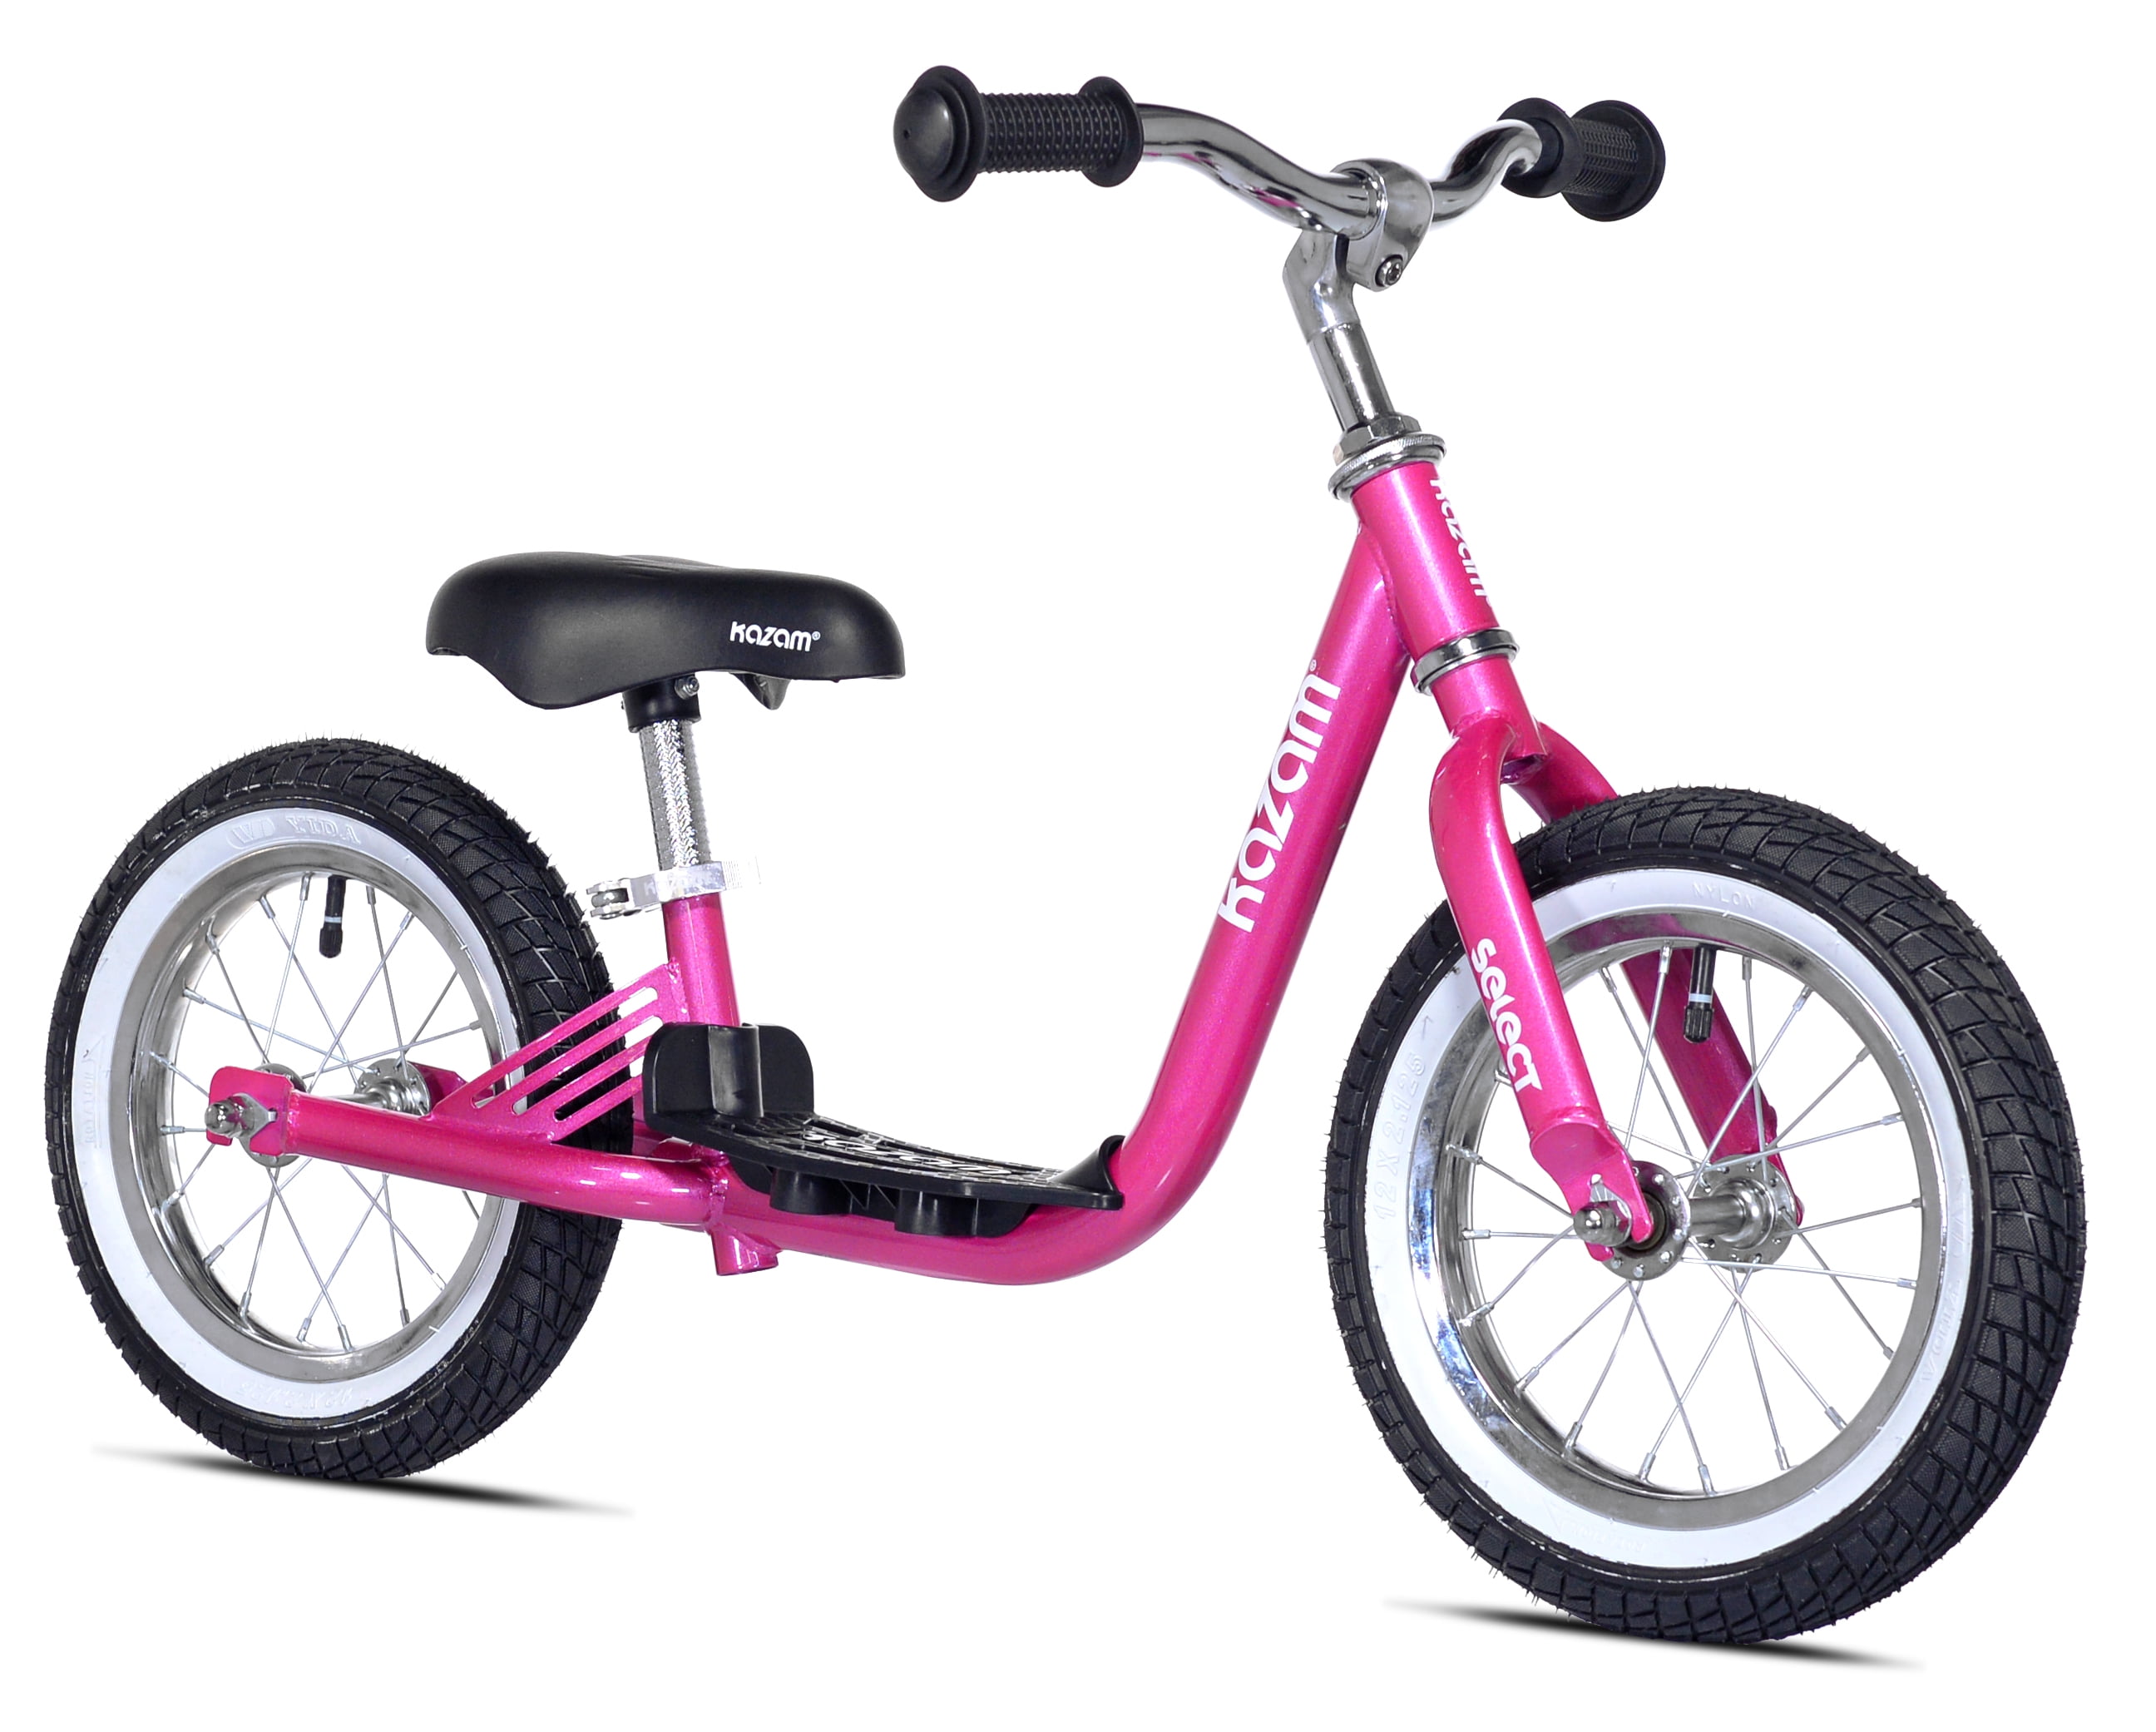 KaZAM 12" Select Child's Balance Bike, Pink - Walmart.com - Walmart.com